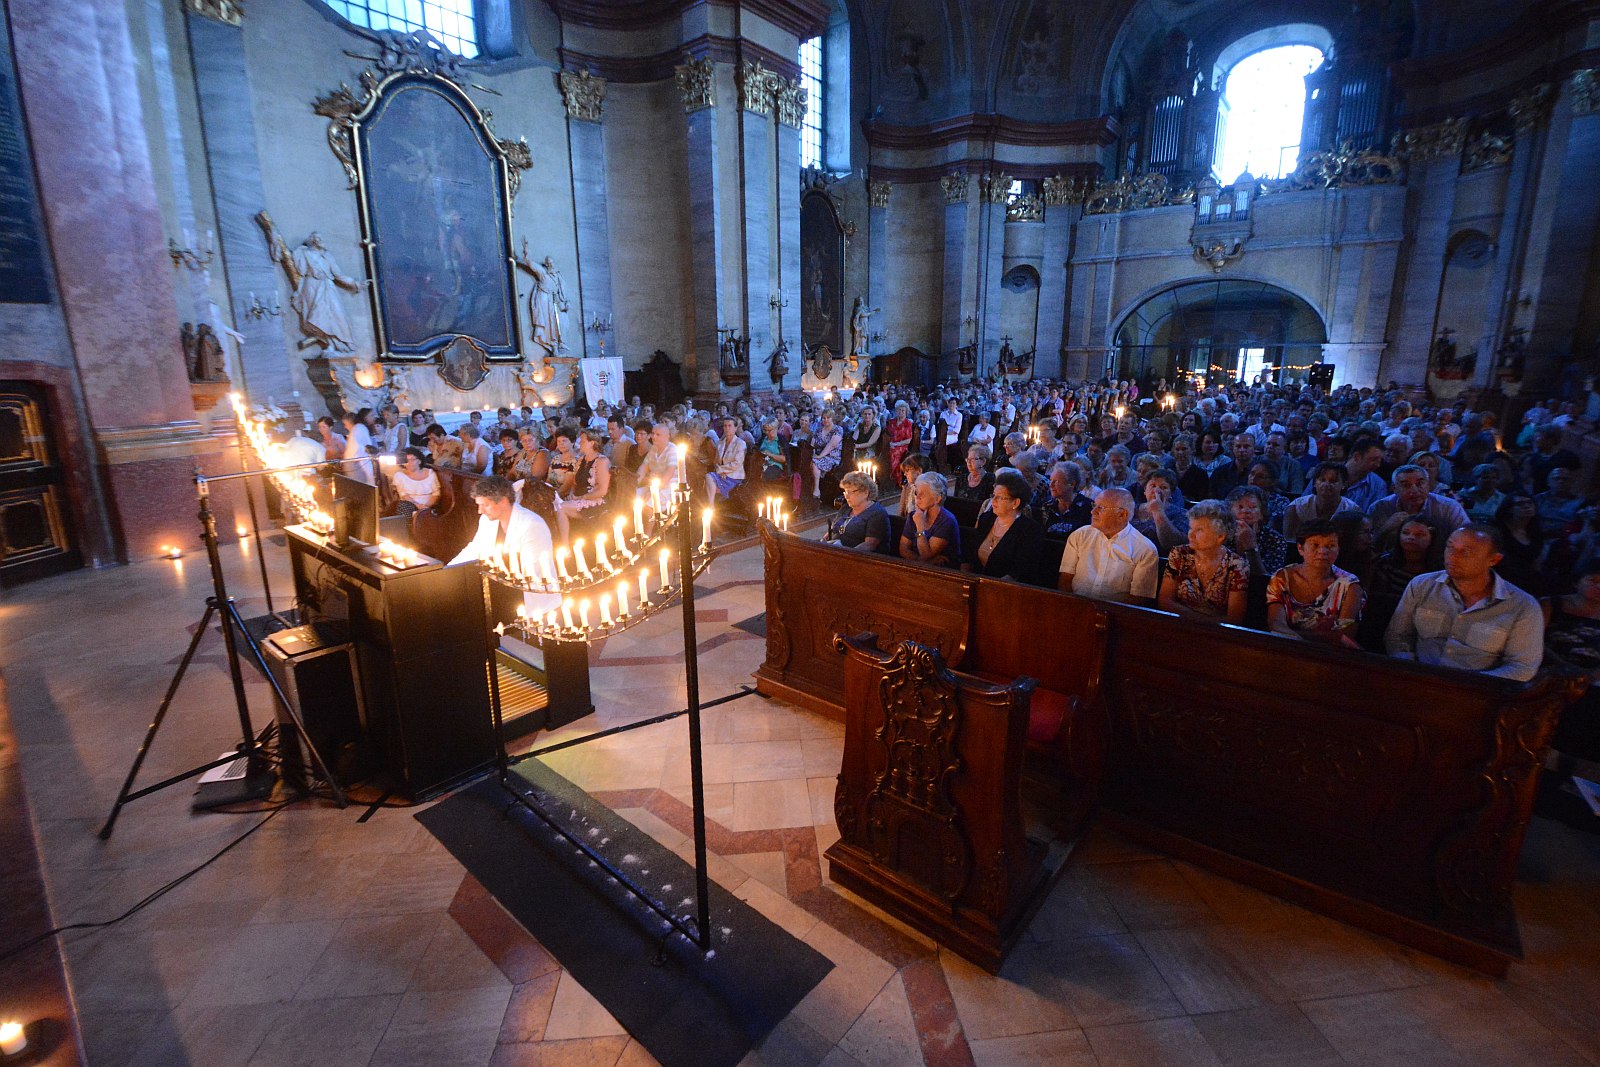 A lélek és fény varázslata - Rákász Gergely orgonakoncertje a Bazilikában